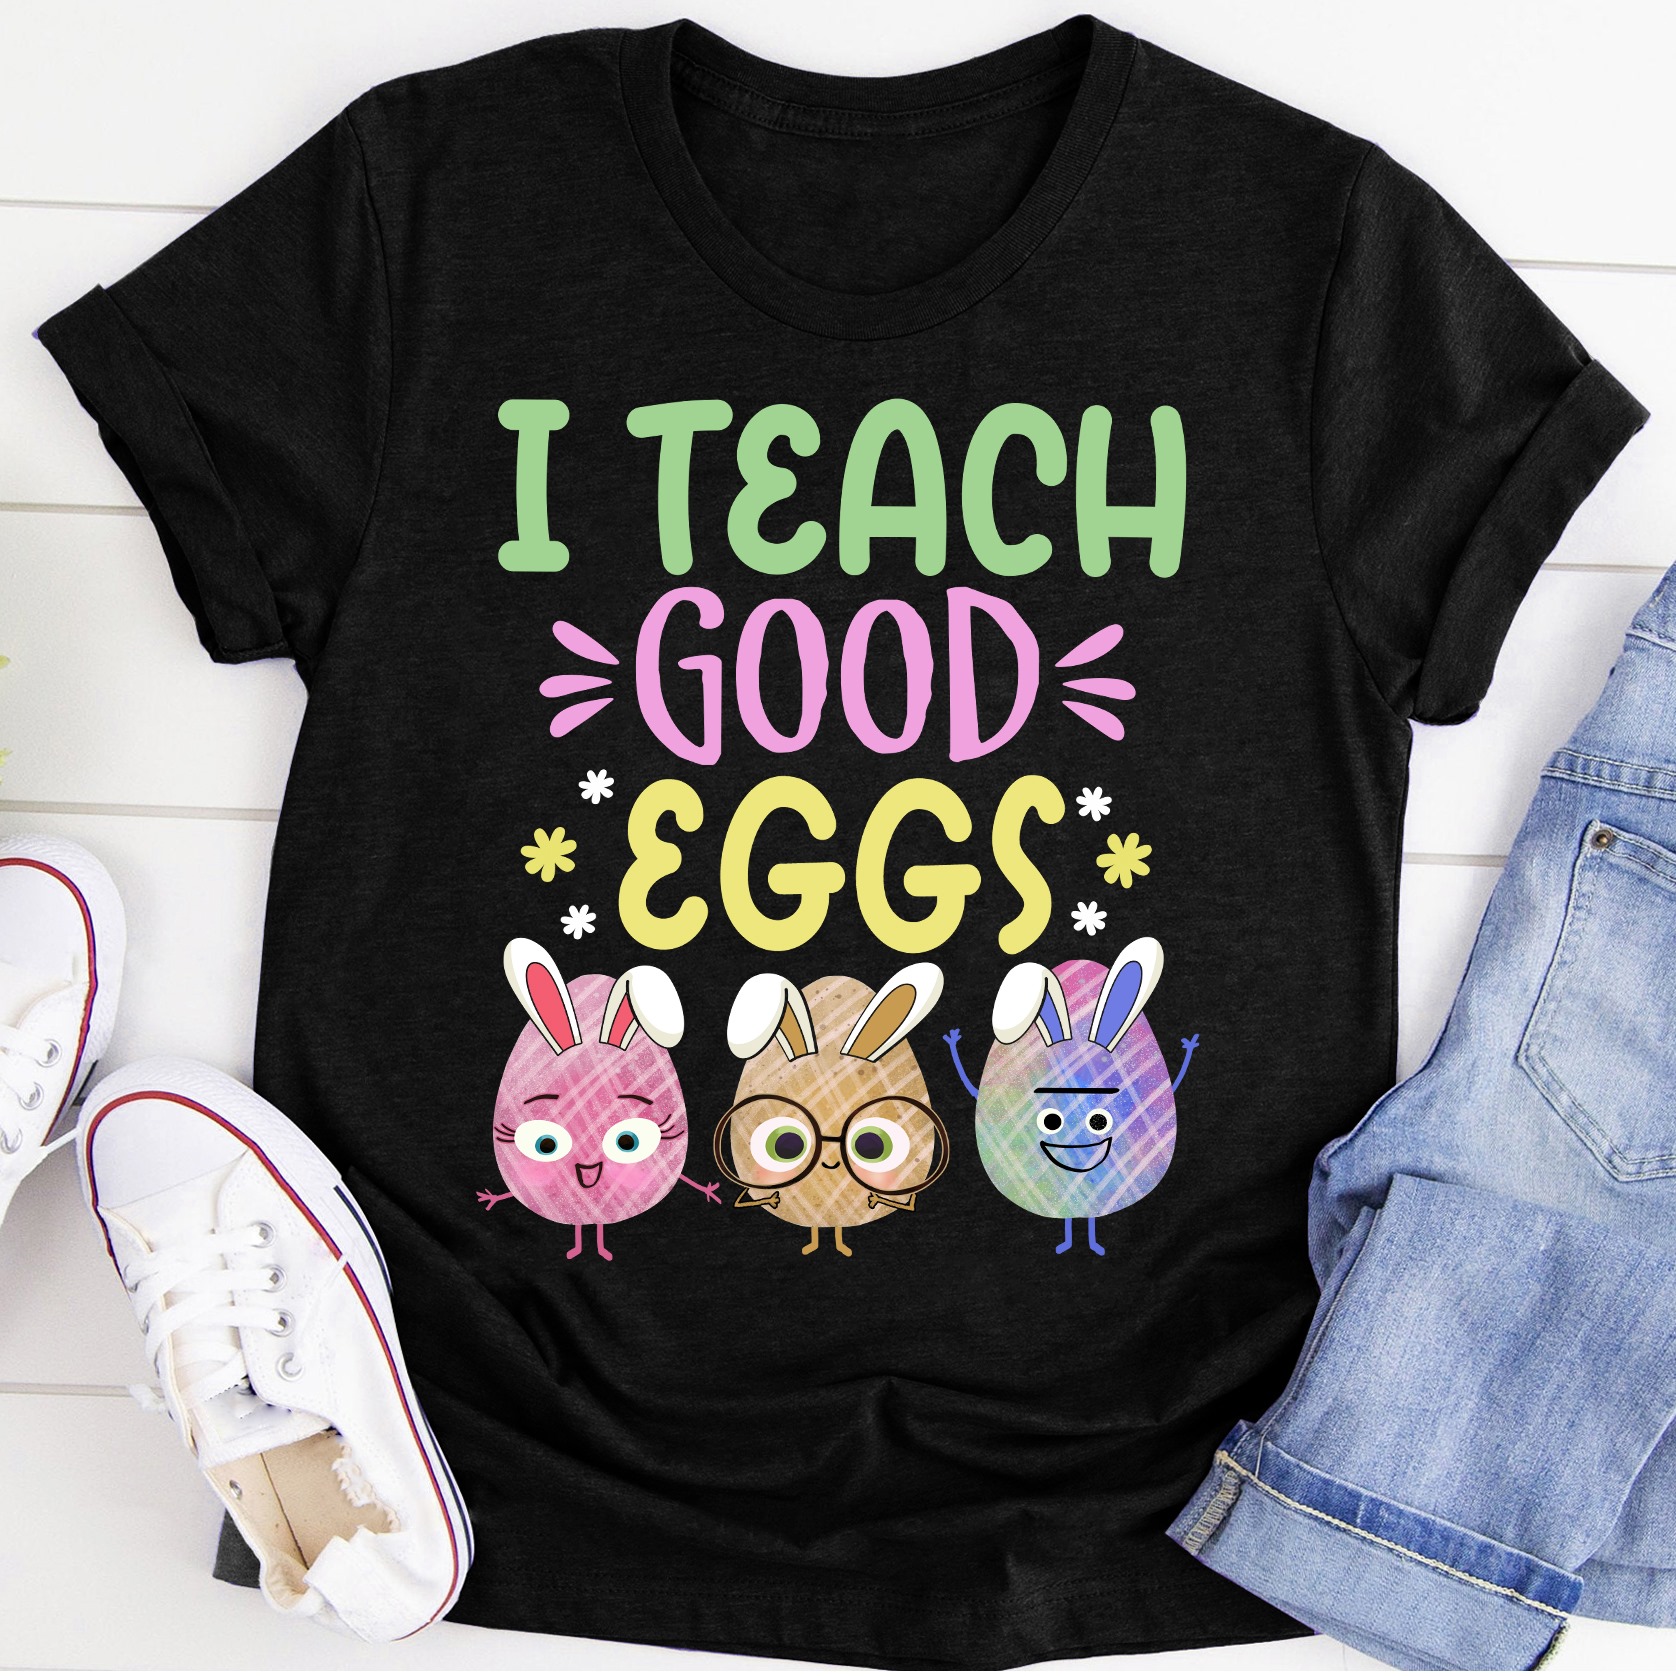 I teach good eggs - Happy Easter